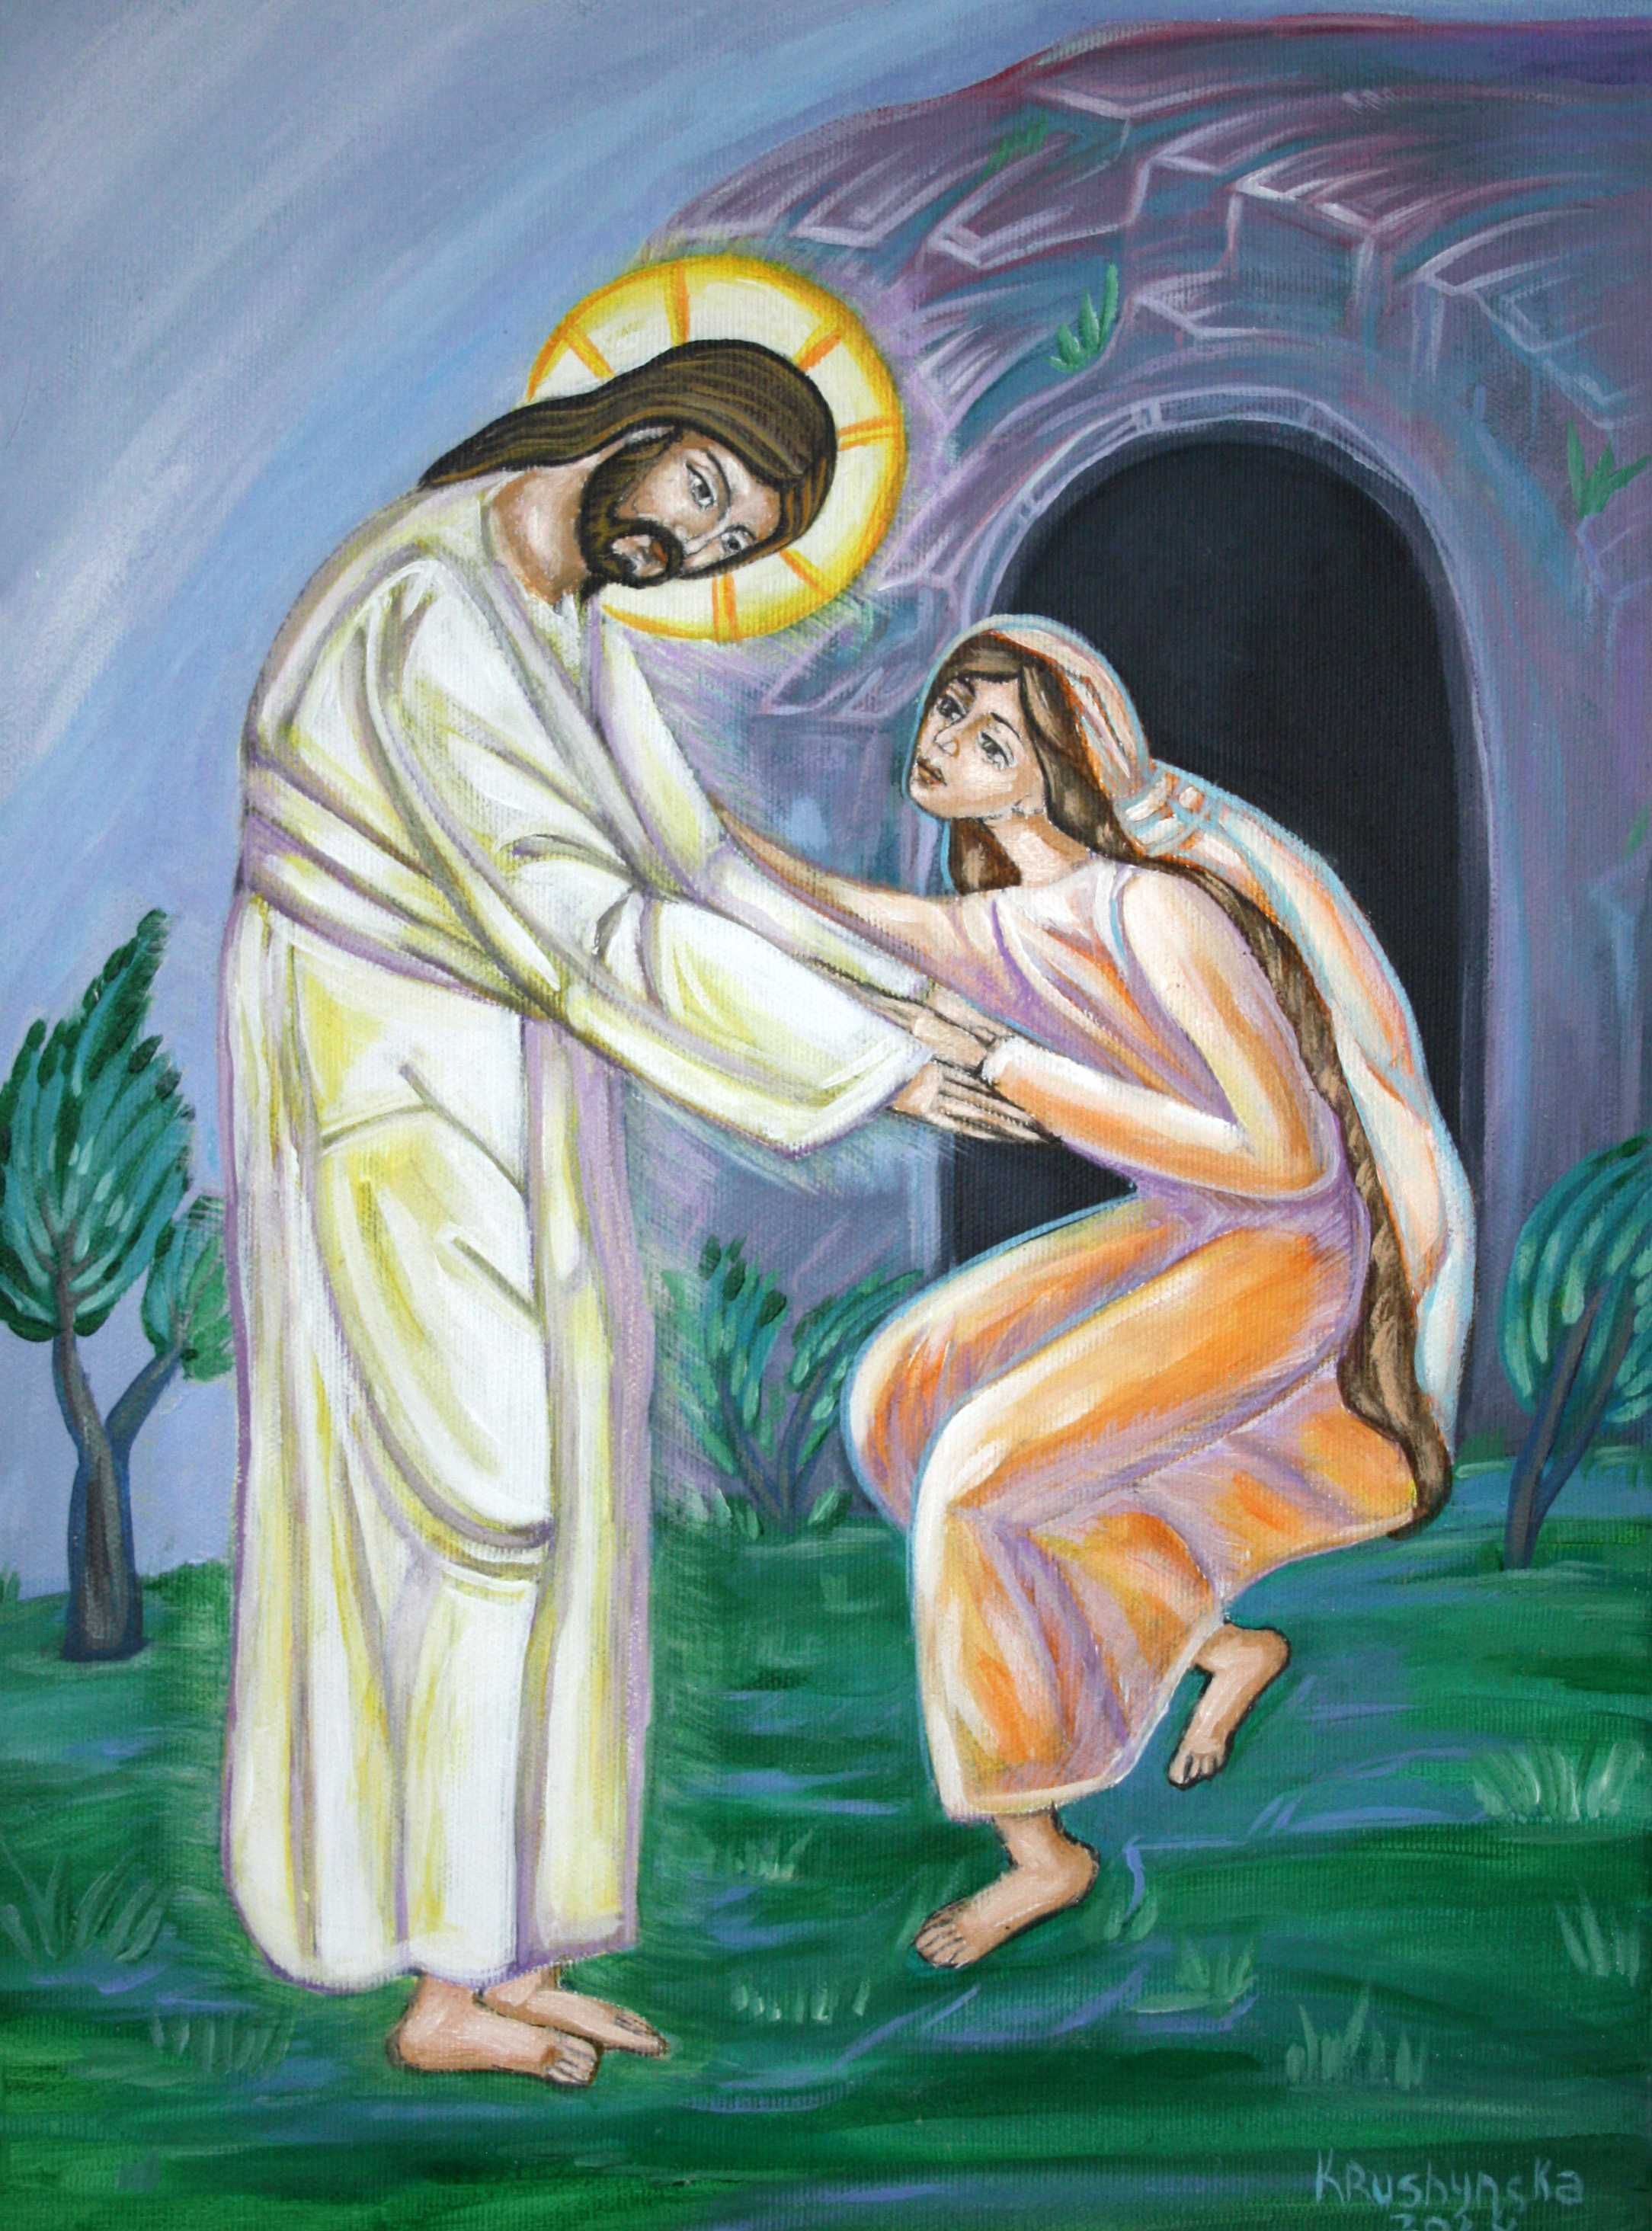 Obraz religijny na plótnie "Jezus Chrystus Zmartwychwstały".